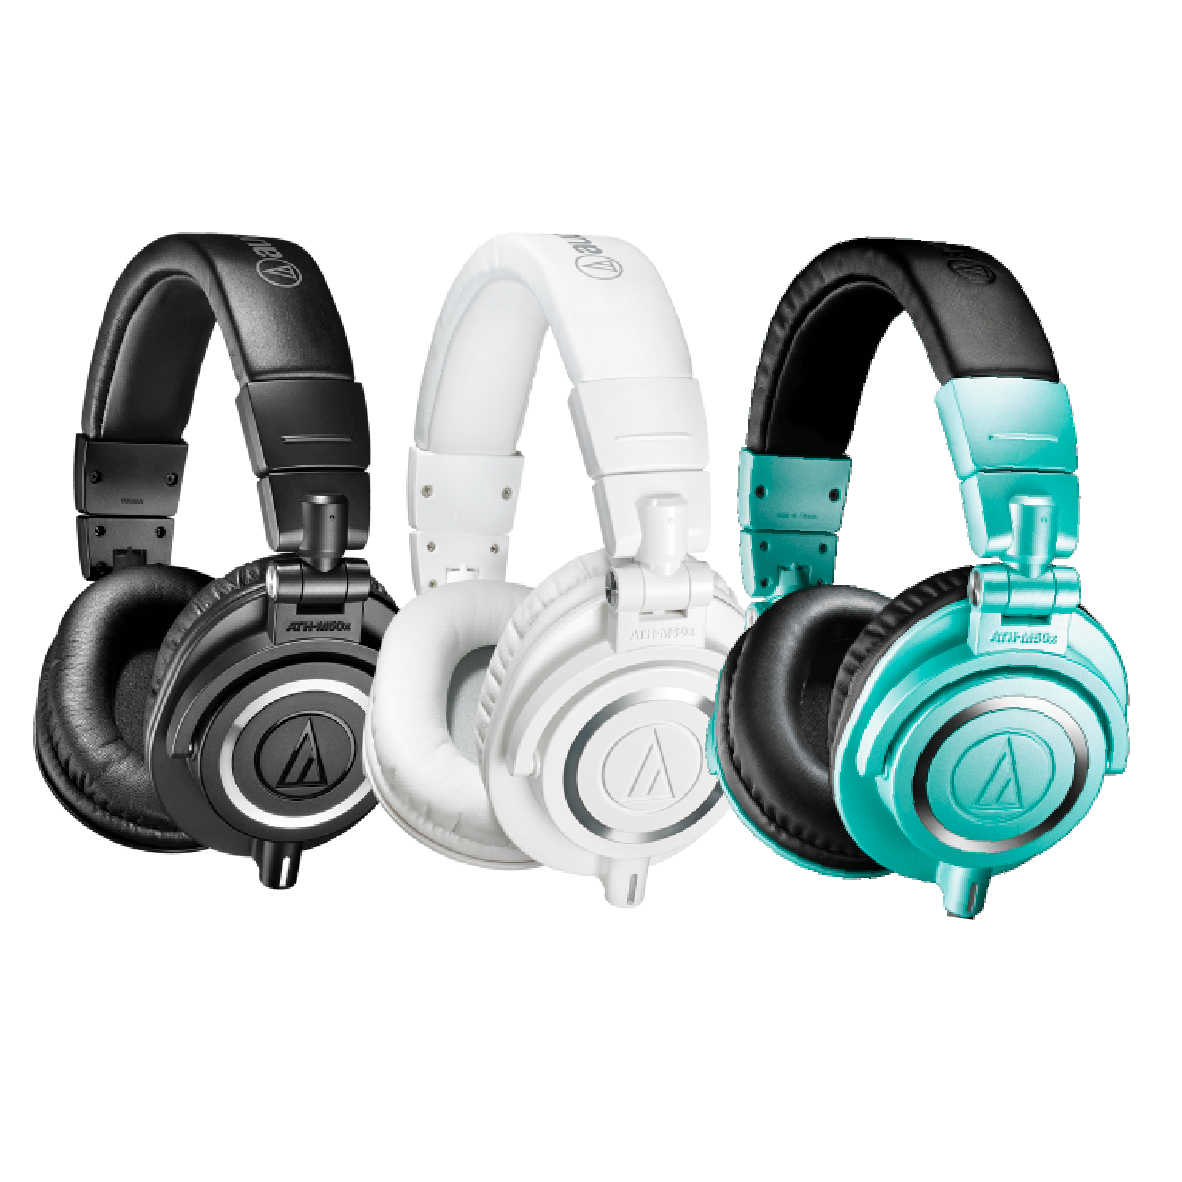 鐵三角 ATH-M50x 三色可選 高音質 錄音室用 專業 監聽 耳罩式 耳機 | 金曲音響